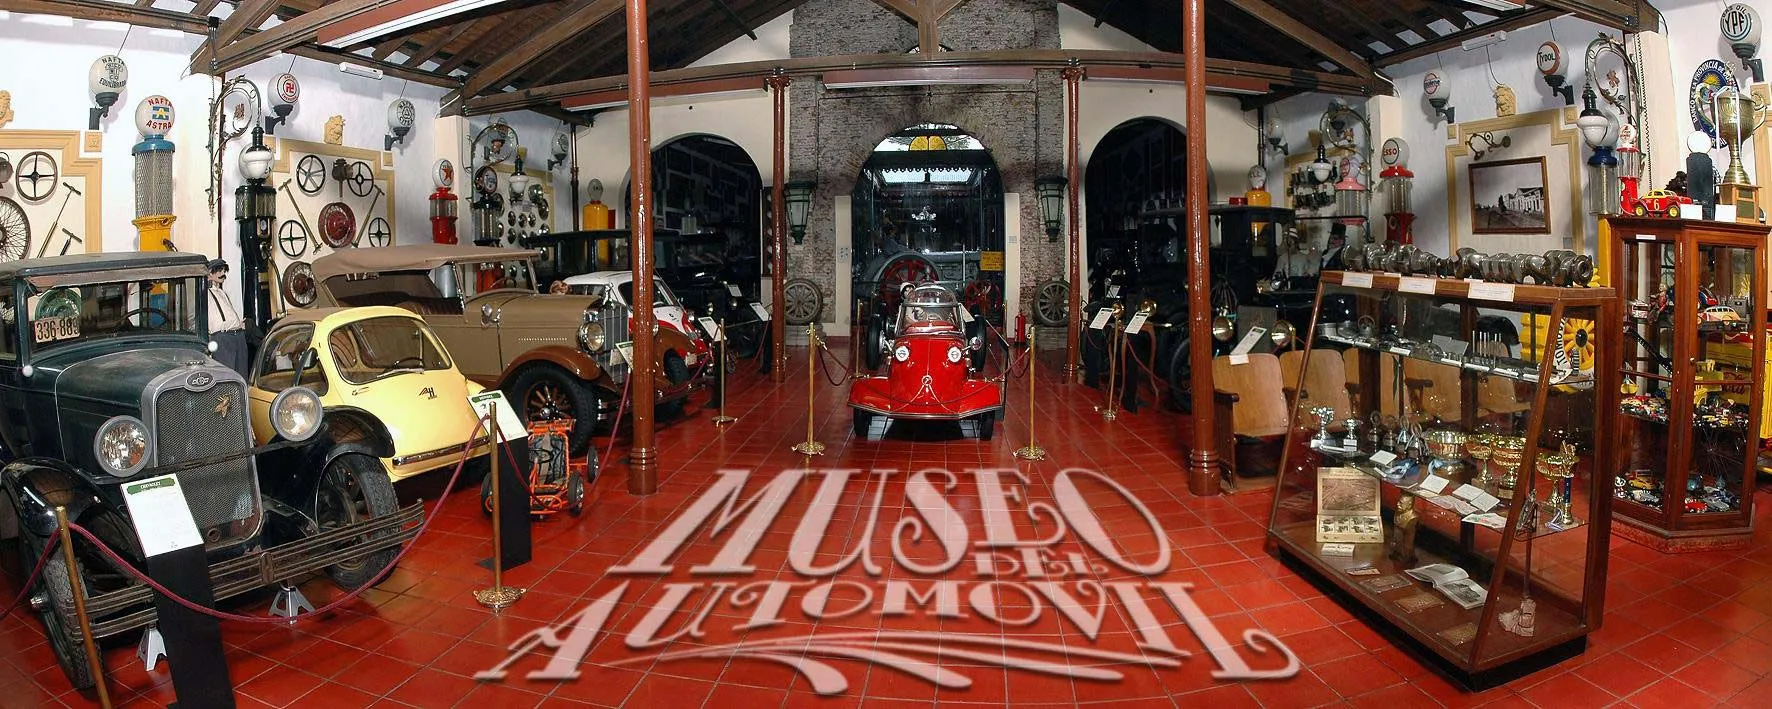 Nota sobre Visita el Museo del Automóvil este fin de semana